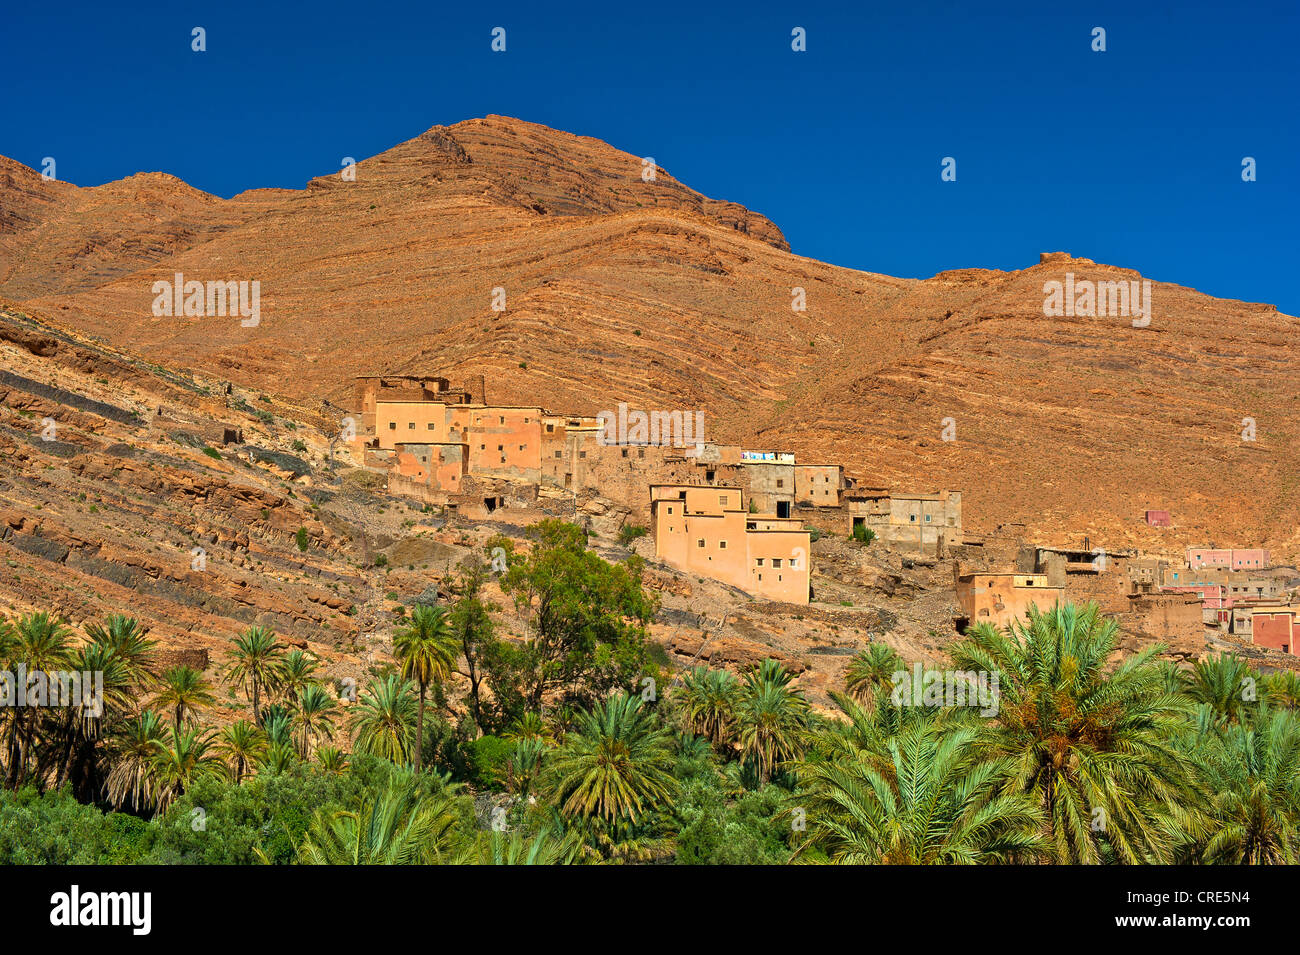 Cuesta tipico paesaggio, pendii montani caratterizzato da fenomeni di erosione, con piccoli insediamenti e palme da dattero, Ait Mansour valley Foto Stock